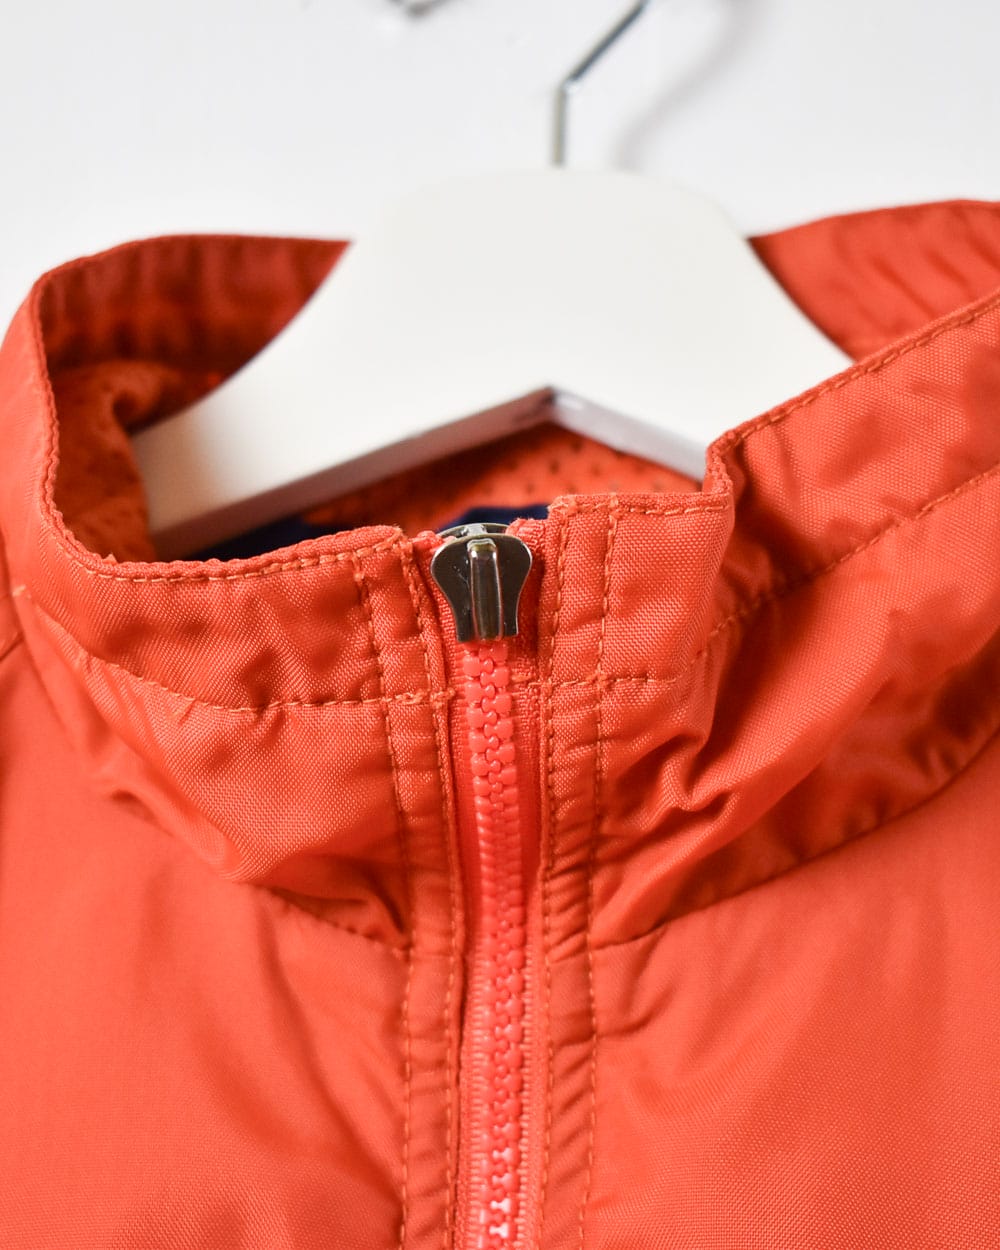 Orange Nike 1/4 Zip Windbreaker Jacket - X-Small